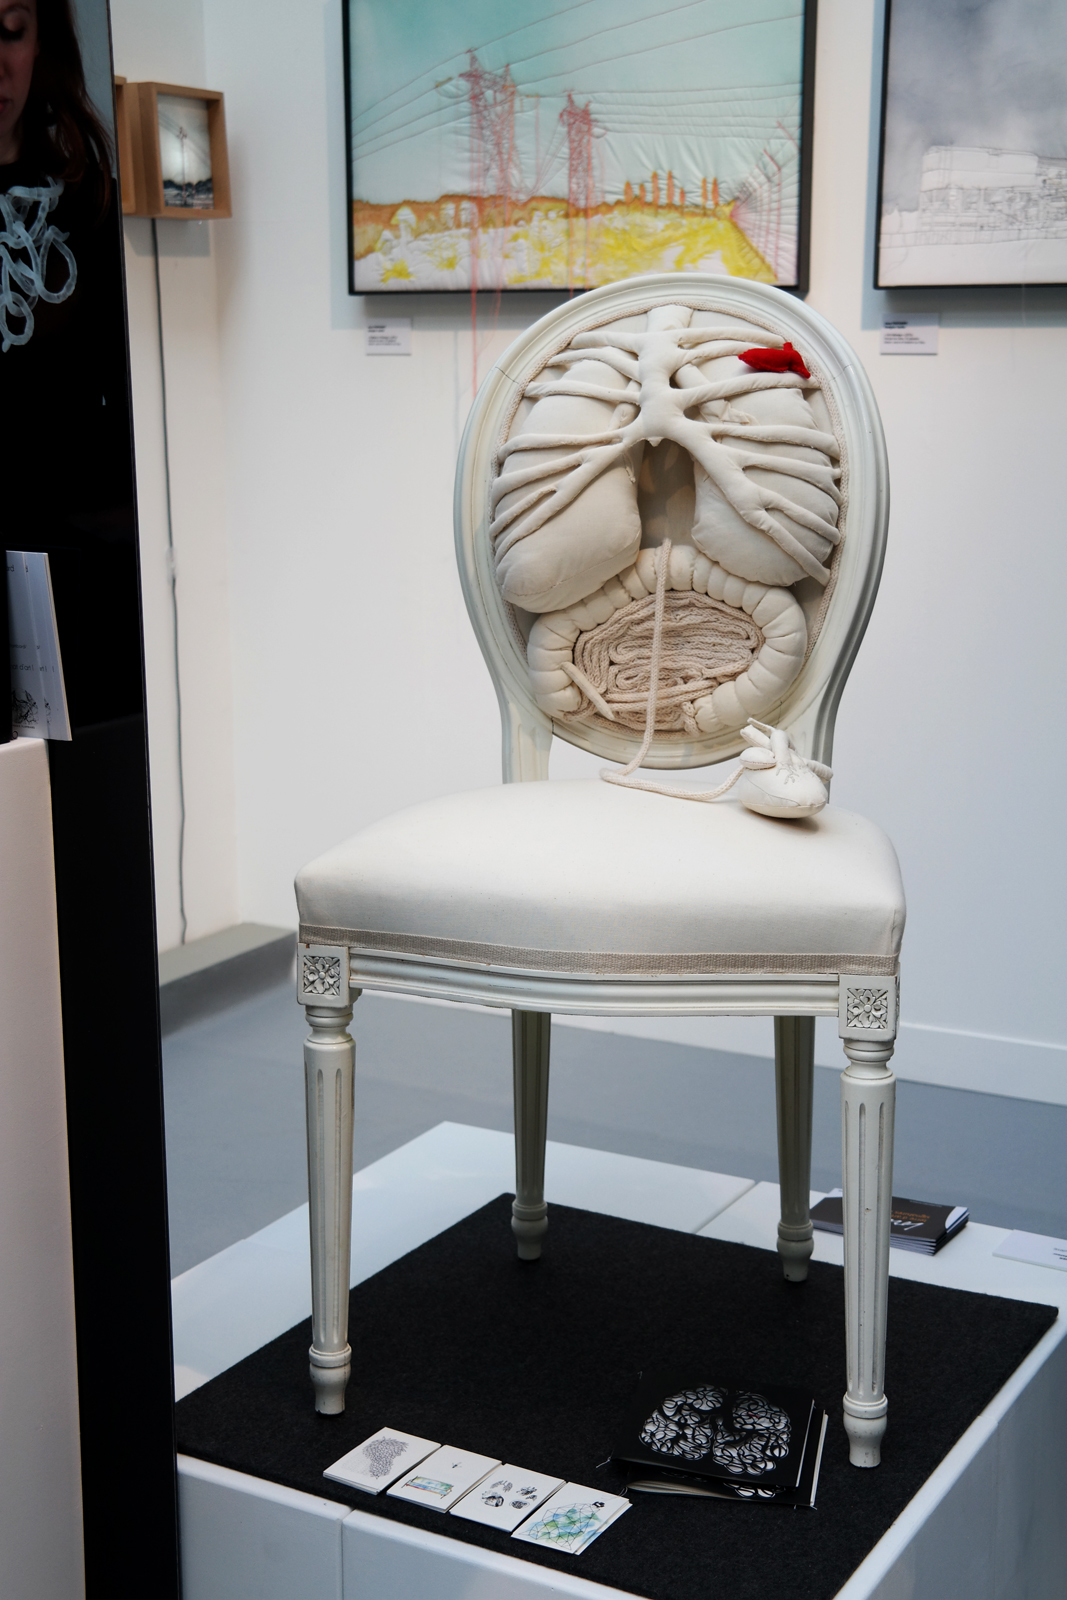 Chaise anatomique anatomical chair by Pauline Krier & Anouk Cazin stand Lorraine Salon Révélations 2015 Grand Palais Paris métiers art et création